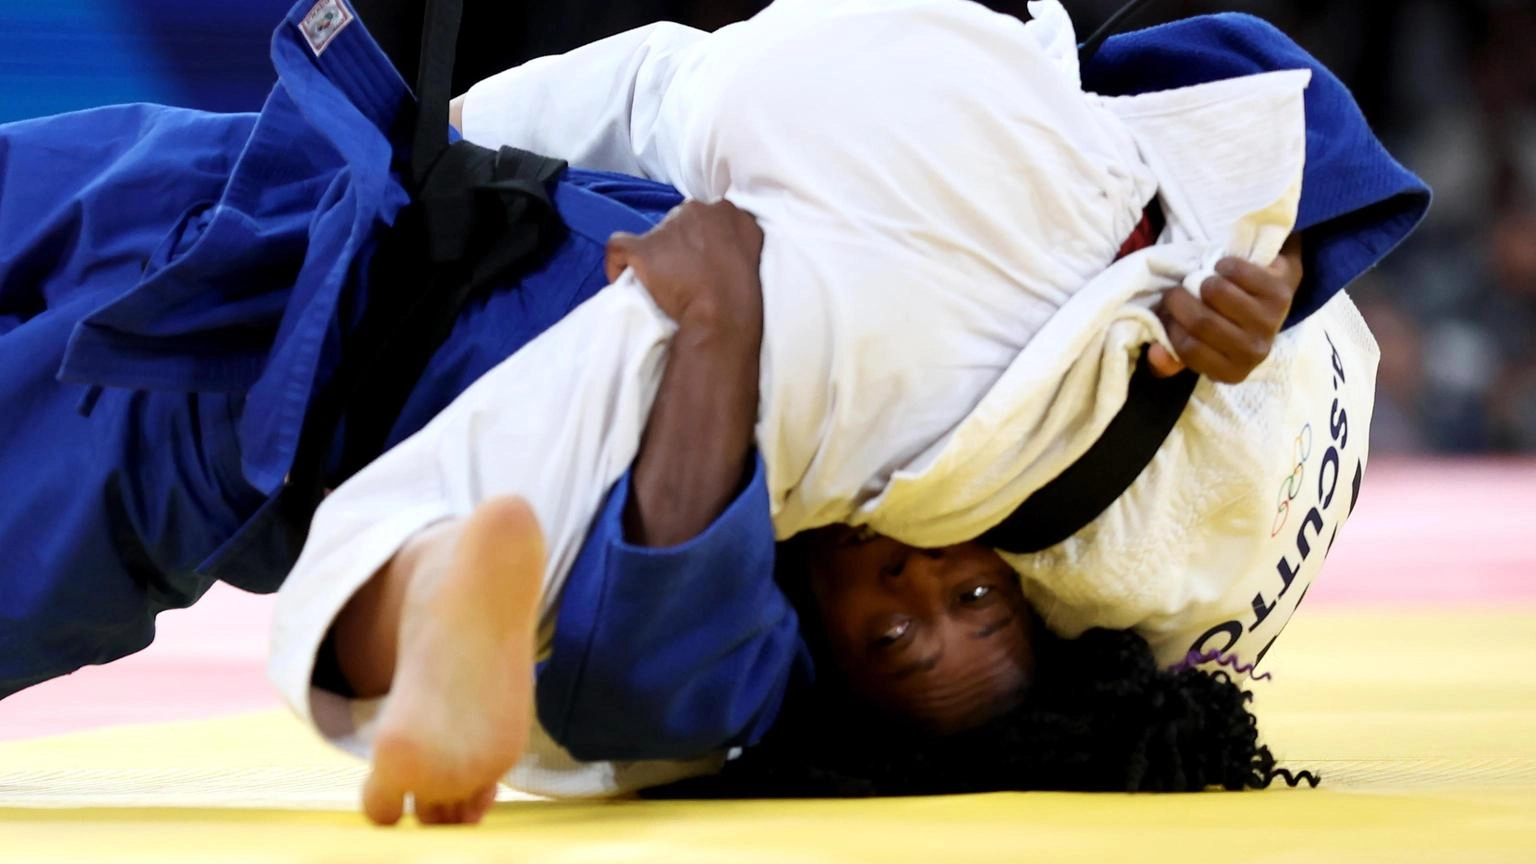 Parigi: Judo, Scutto perde e va ai ripescaggi